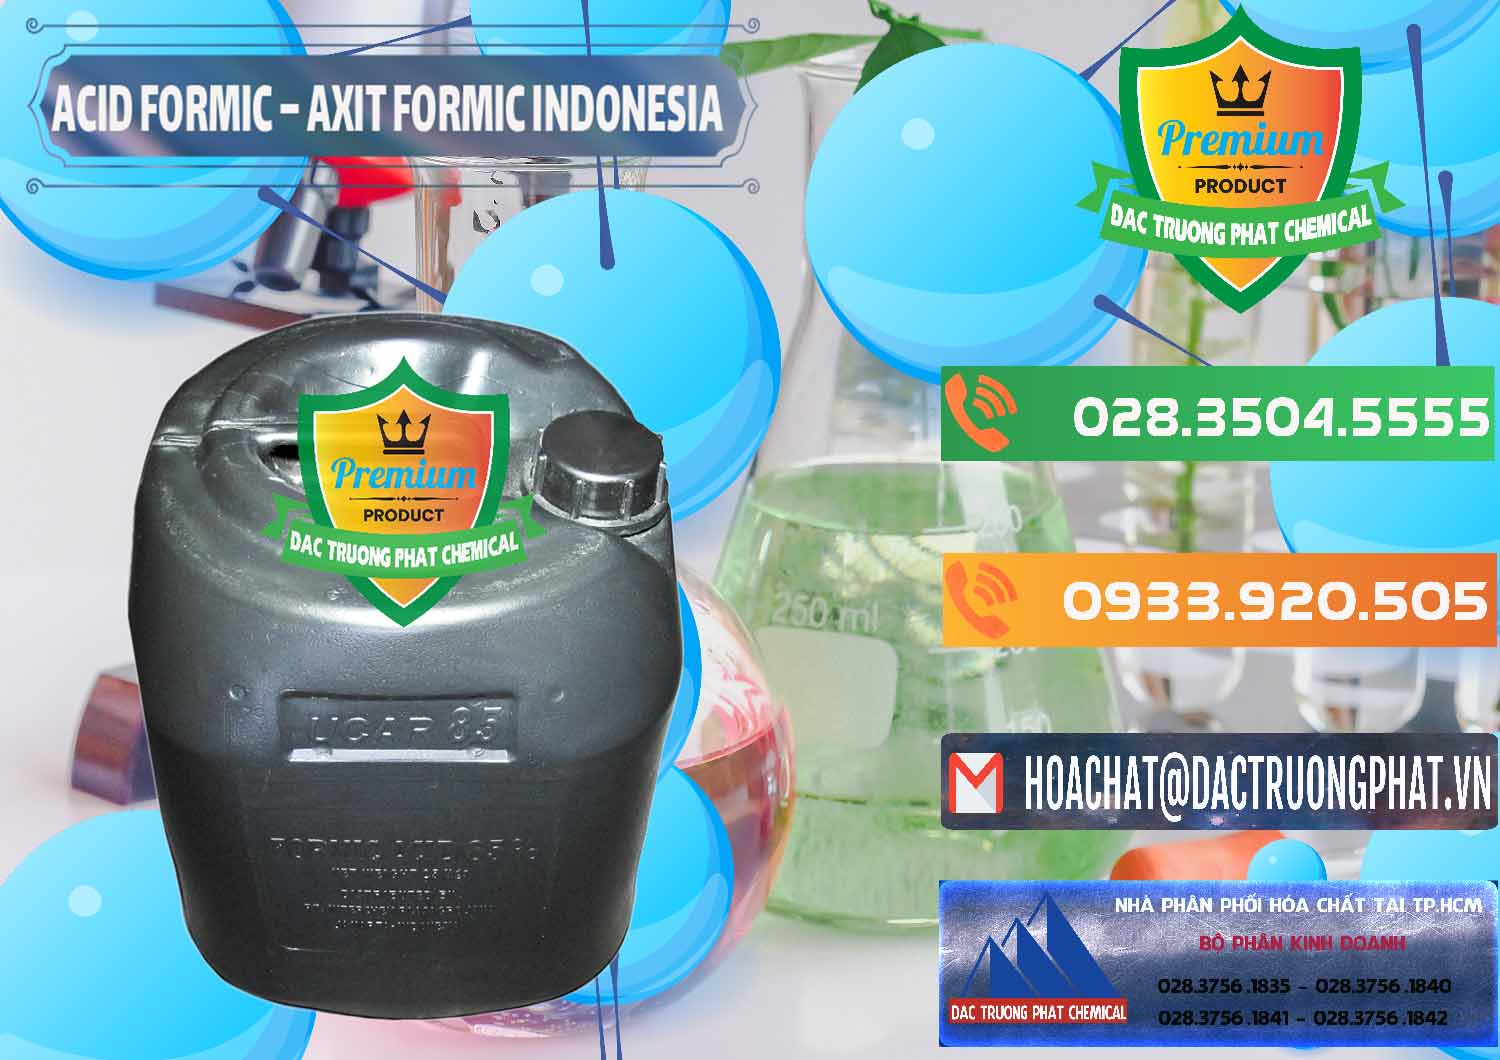 Nơi chuyên bán và cung ứng Acid Formic - Axit Formic Indonesia - 0026 - Công ty phân phối _ cung ứng hóa chất tại TP.HCM - hoachatxulynuoc.com.vn